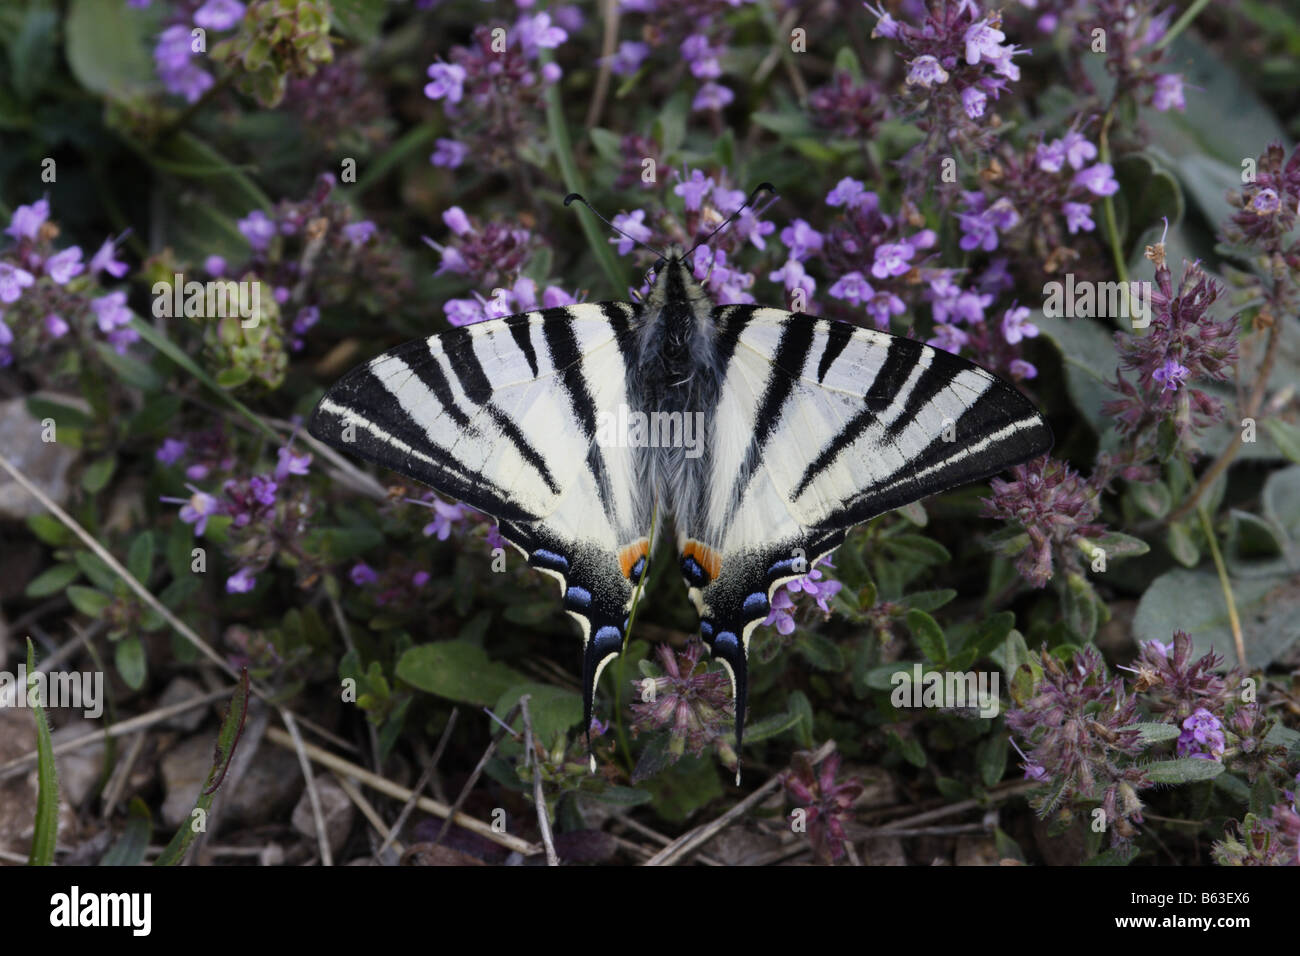 Segelfalter Edelfalter Iphiclides podalirius butterfly Scarce Swallowtail Stock Photo